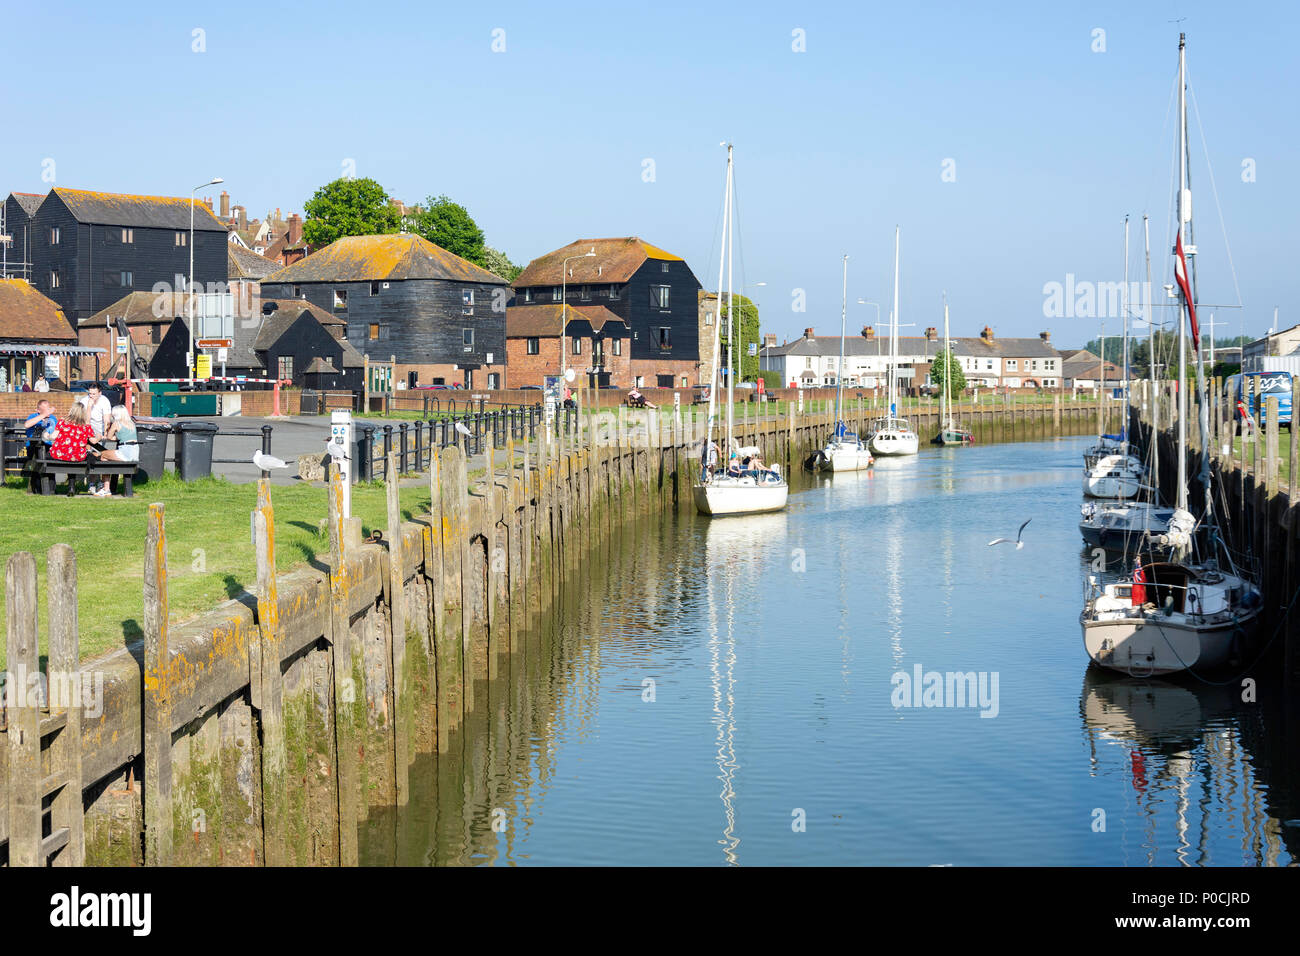 Le seigle Strand Quay sur la rivière Brede, Rye, East Sussex, Angleterre, Royaume-Uni Banque D'Images